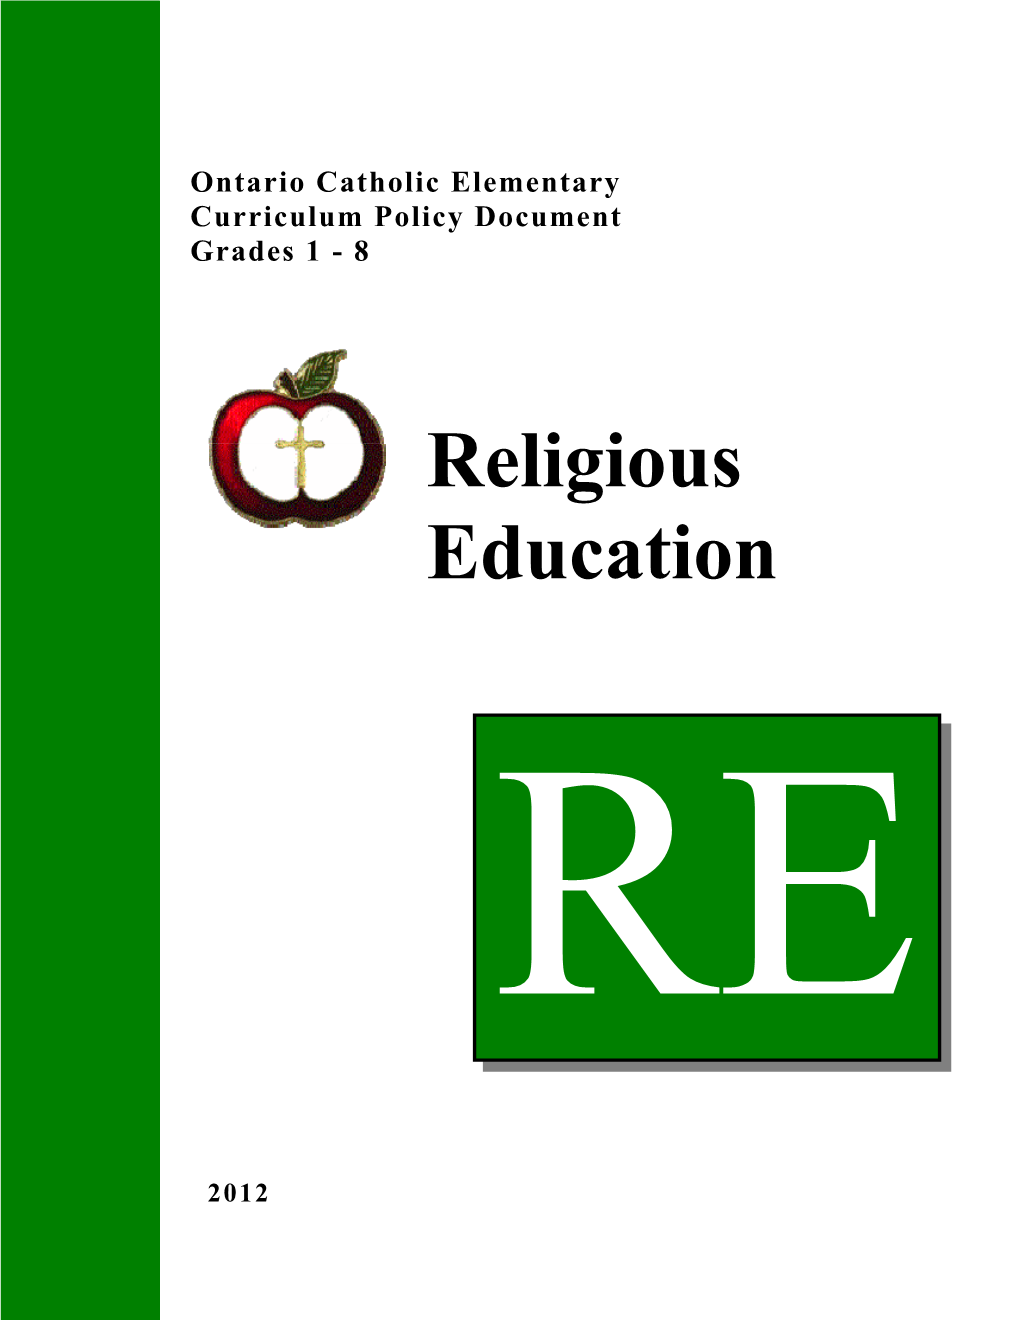 The Ontario Catholic Curriculum: Religious Education for Grades 1-8